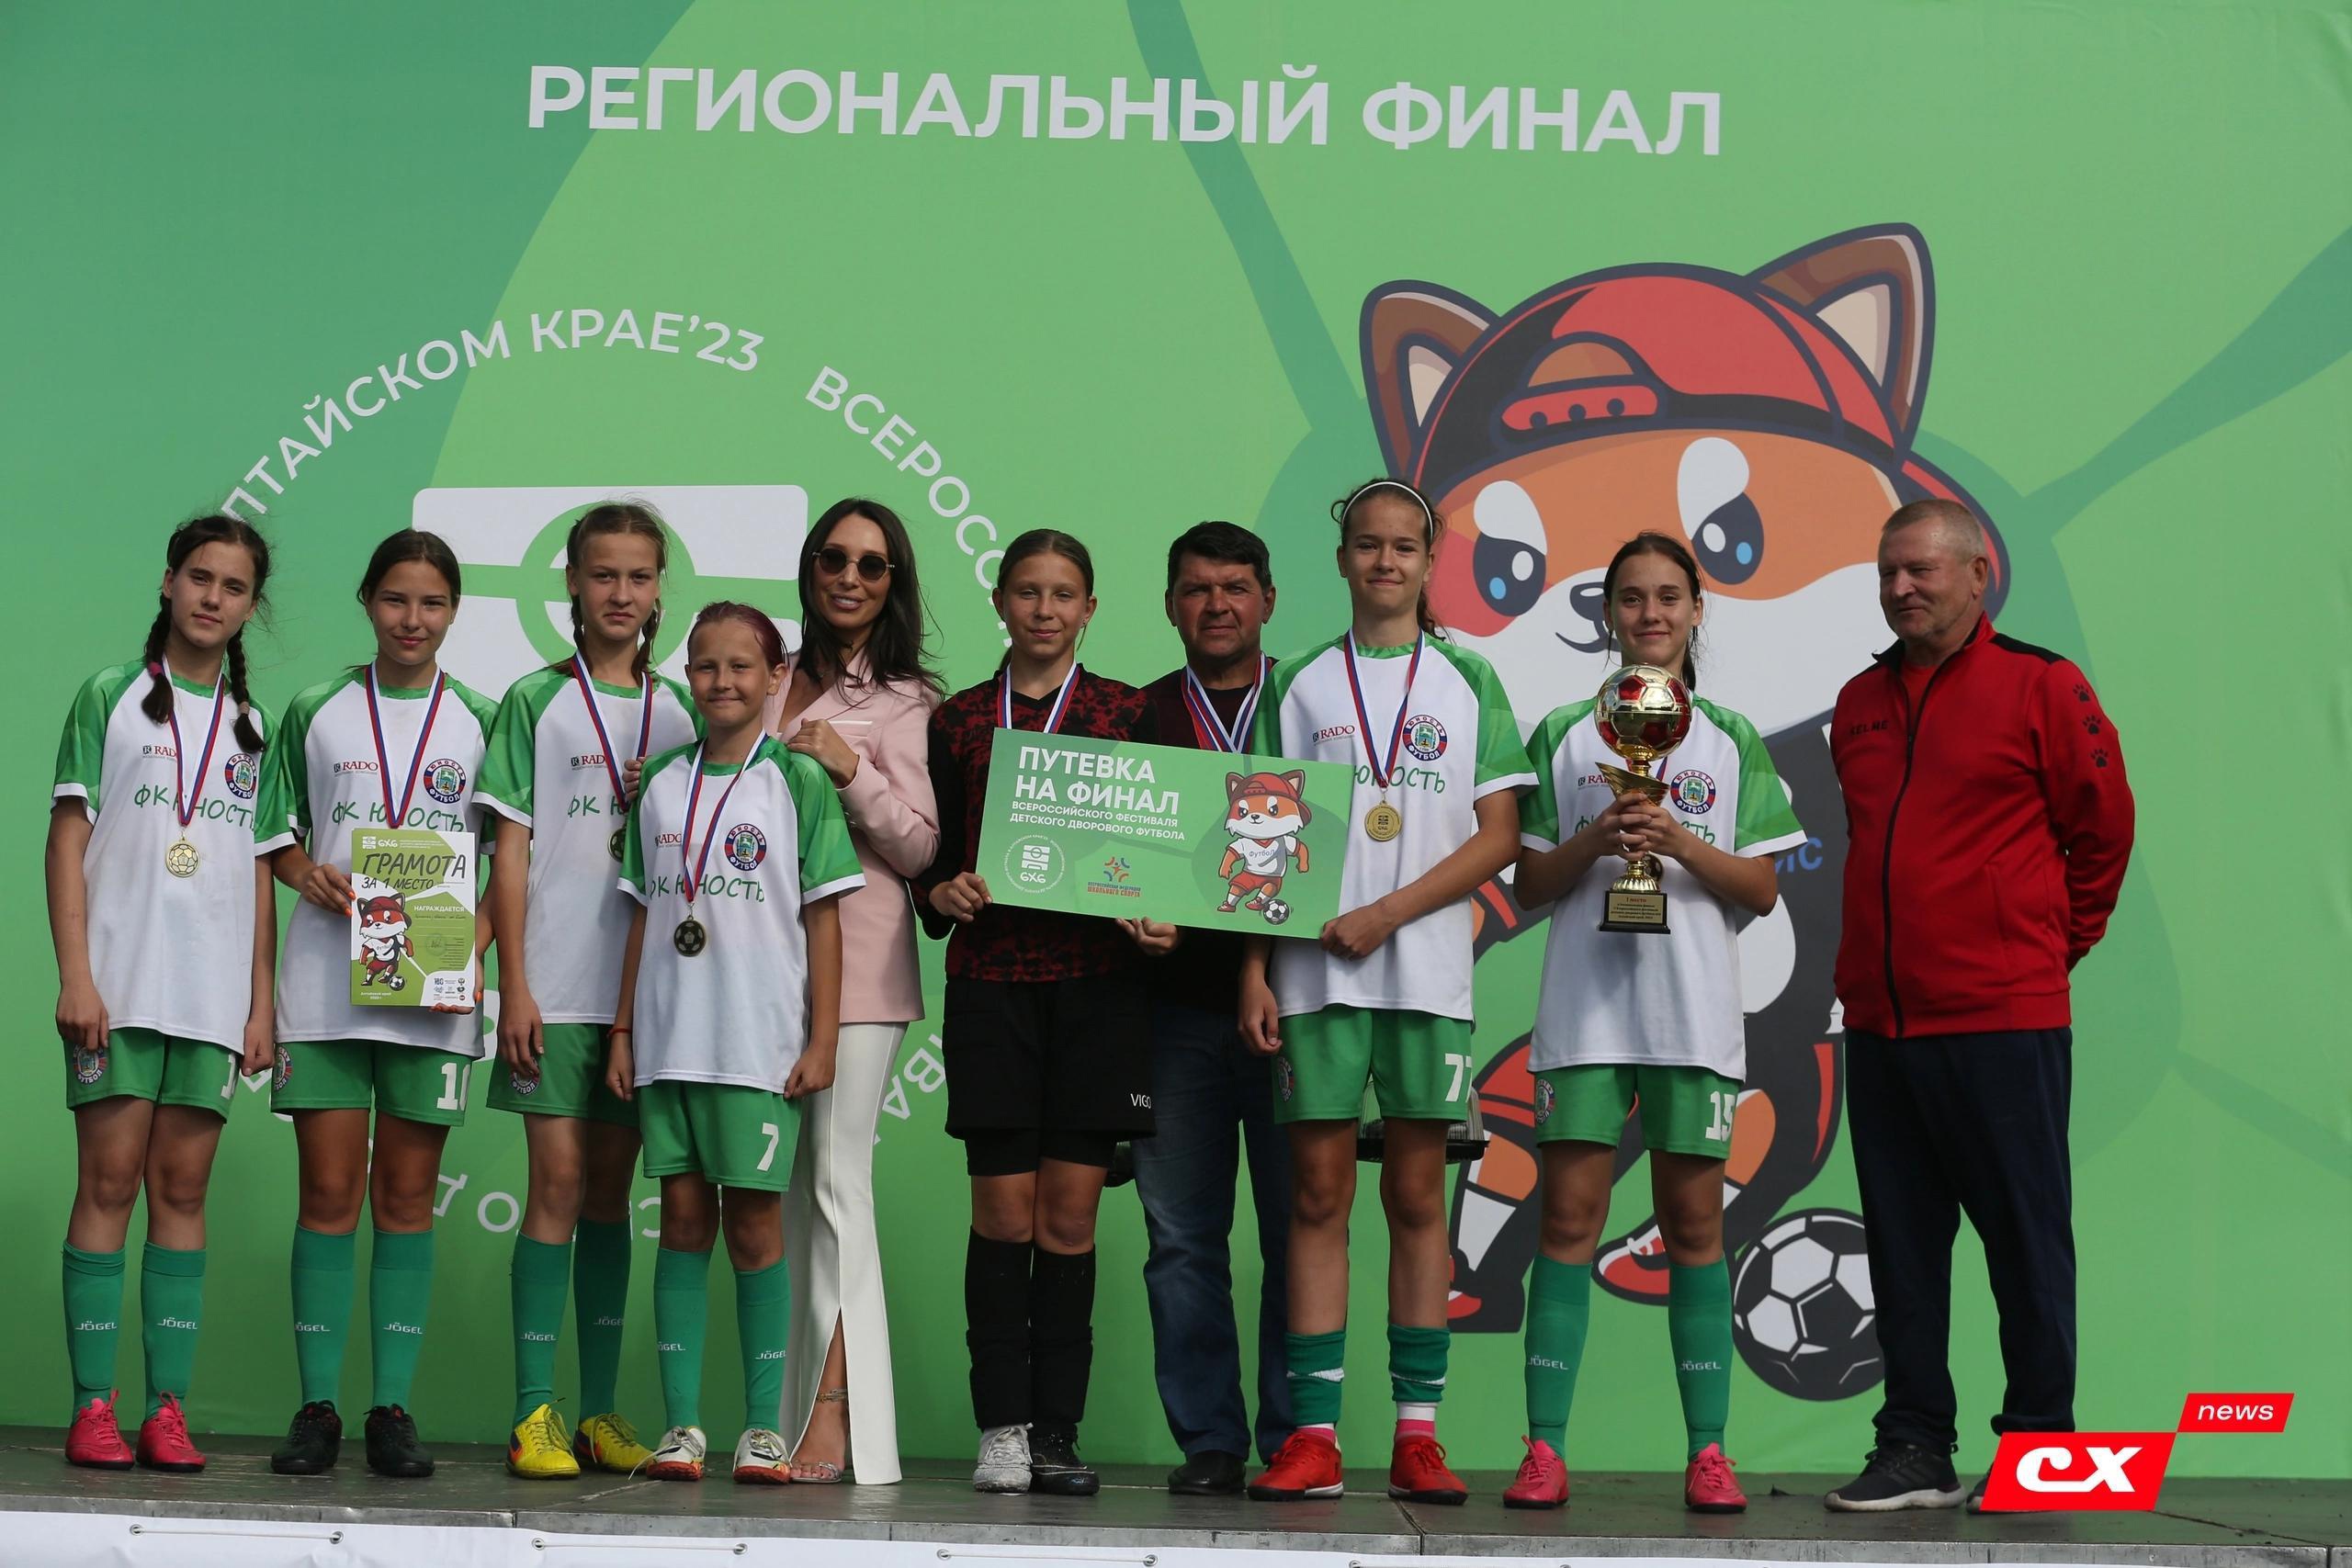 Поздравляем наших футболистов - победителей и призеров финала регионального этапа Всероссийского фестиваля детского дворового футбола!.